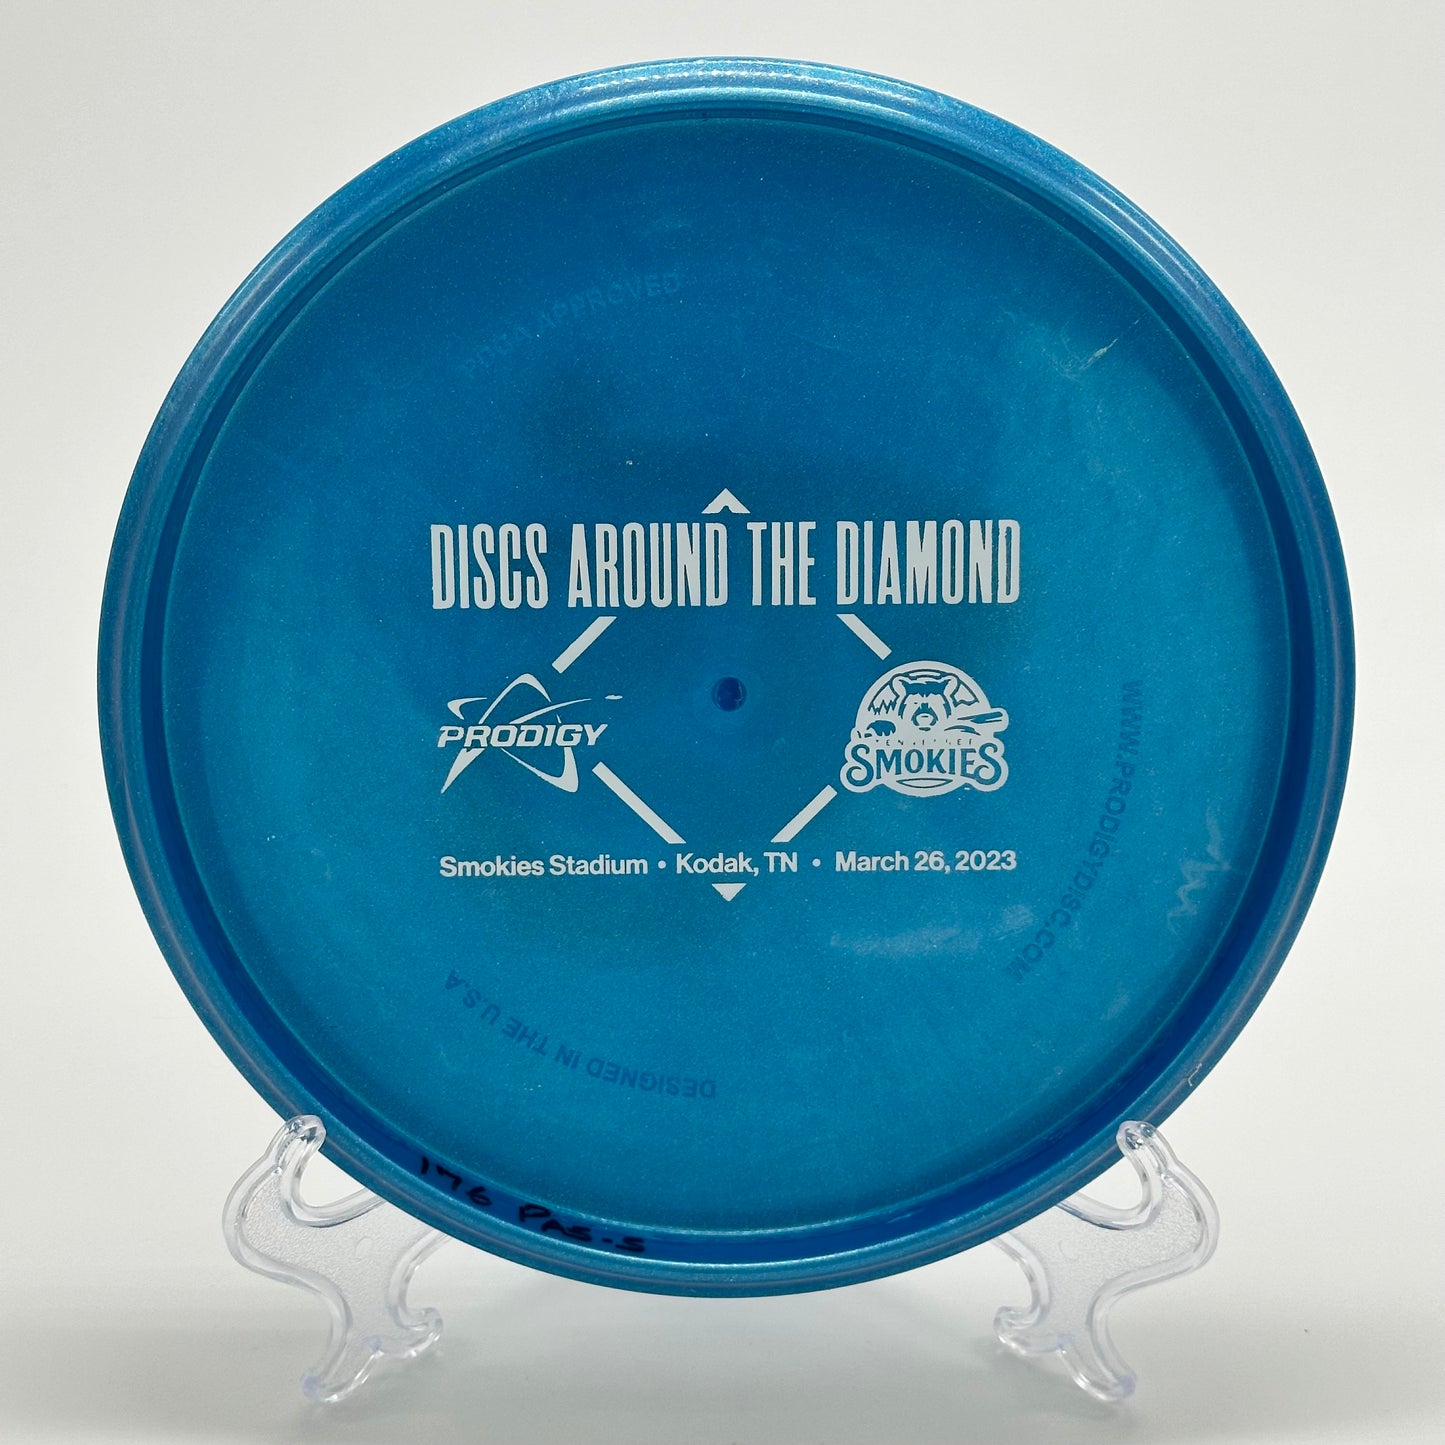 Prodigy Pa-5 | 500 Tenessee Smokies Discs Around the Diamond 2023